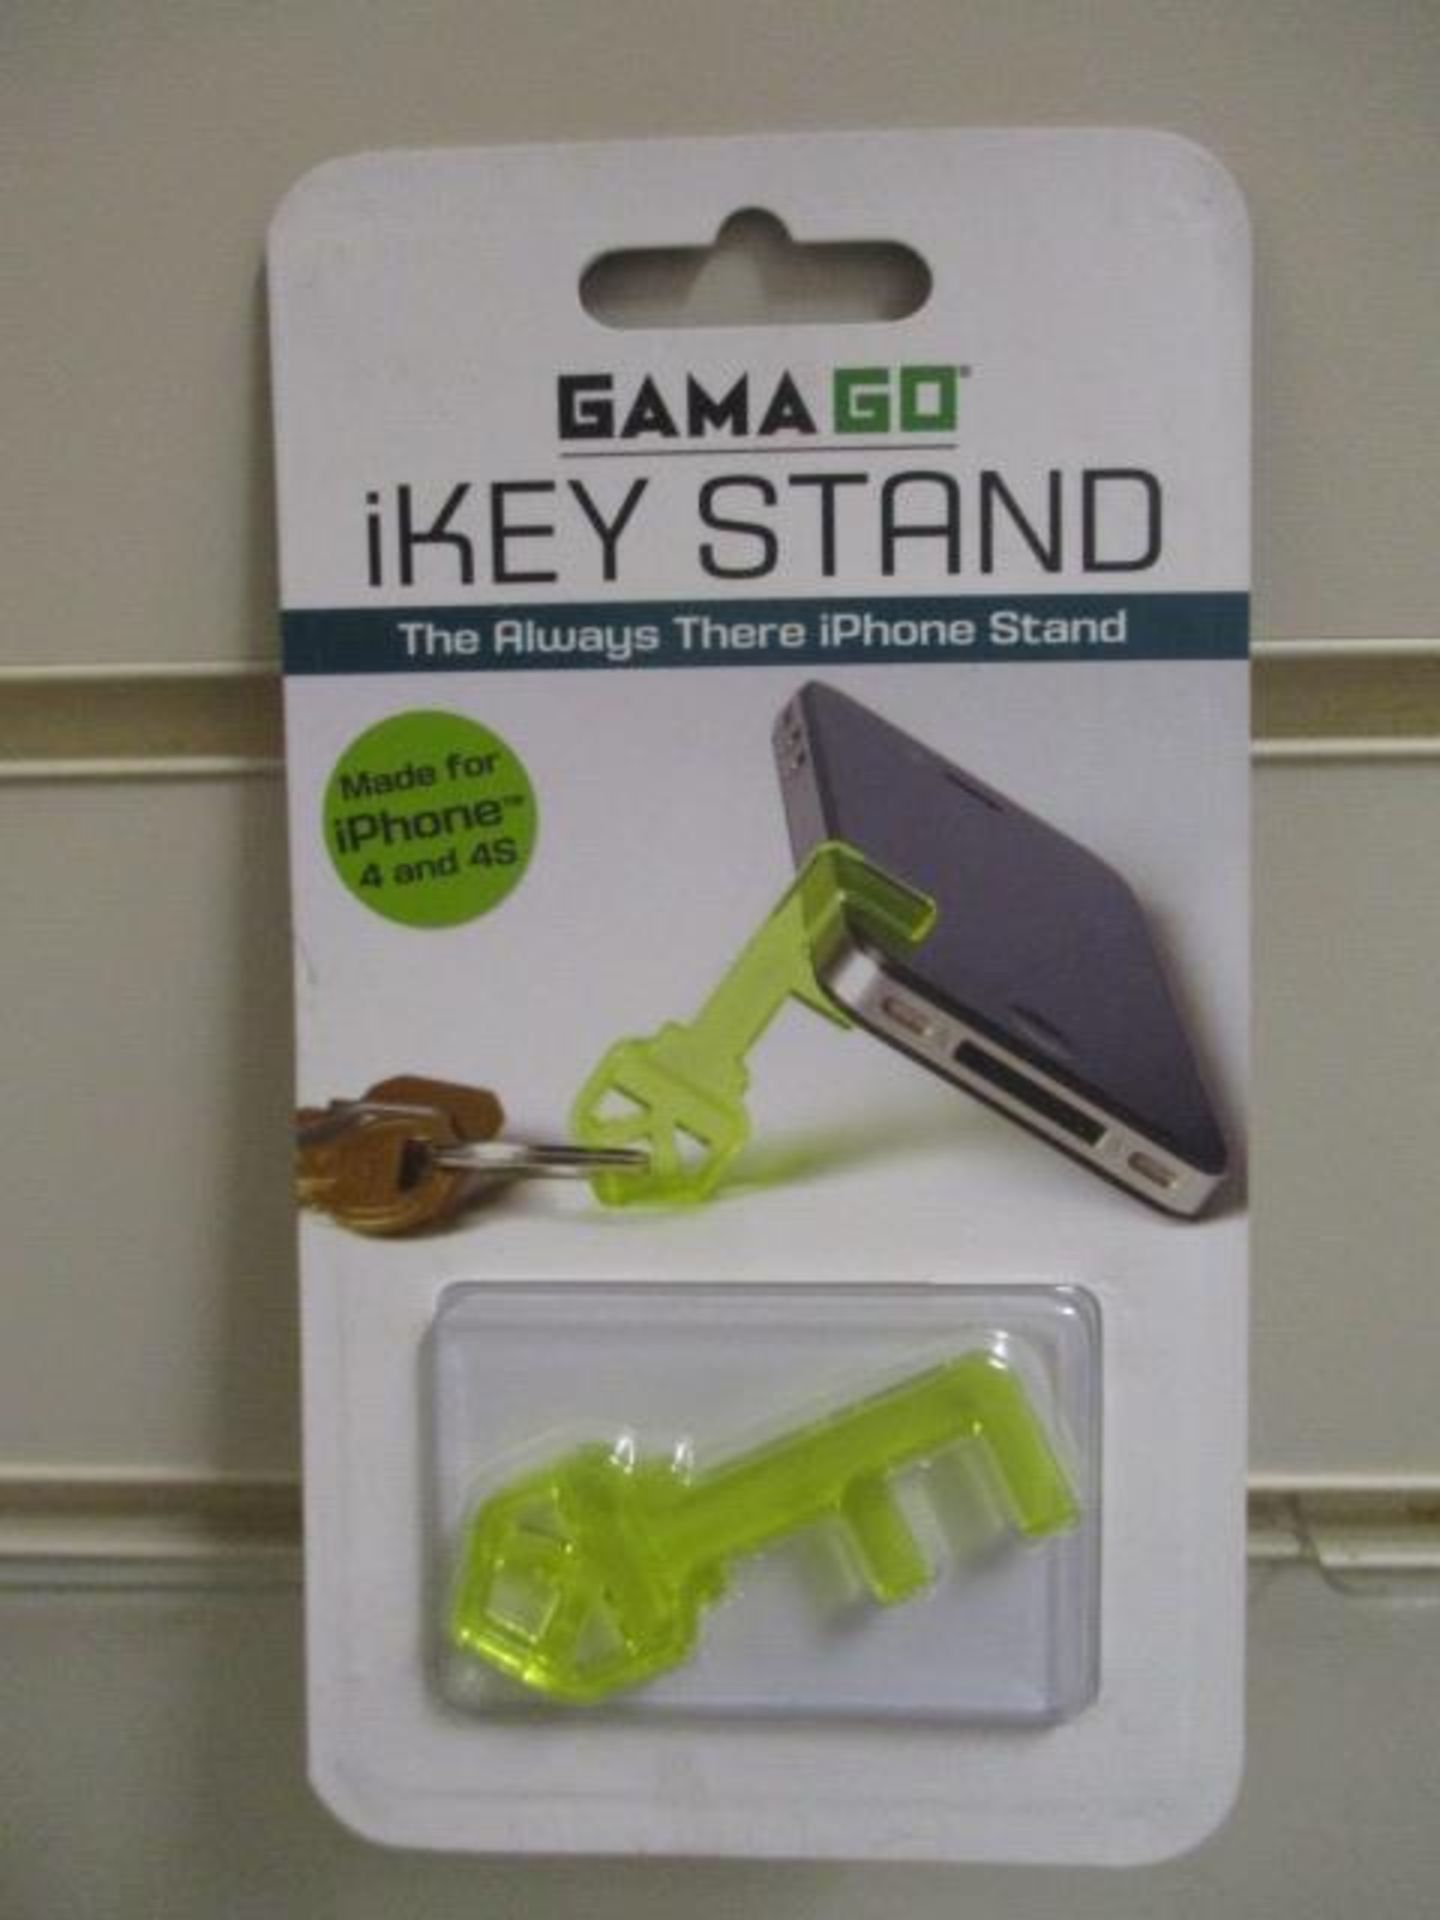 Approx. 100pcs brand new Gamma key stand unit